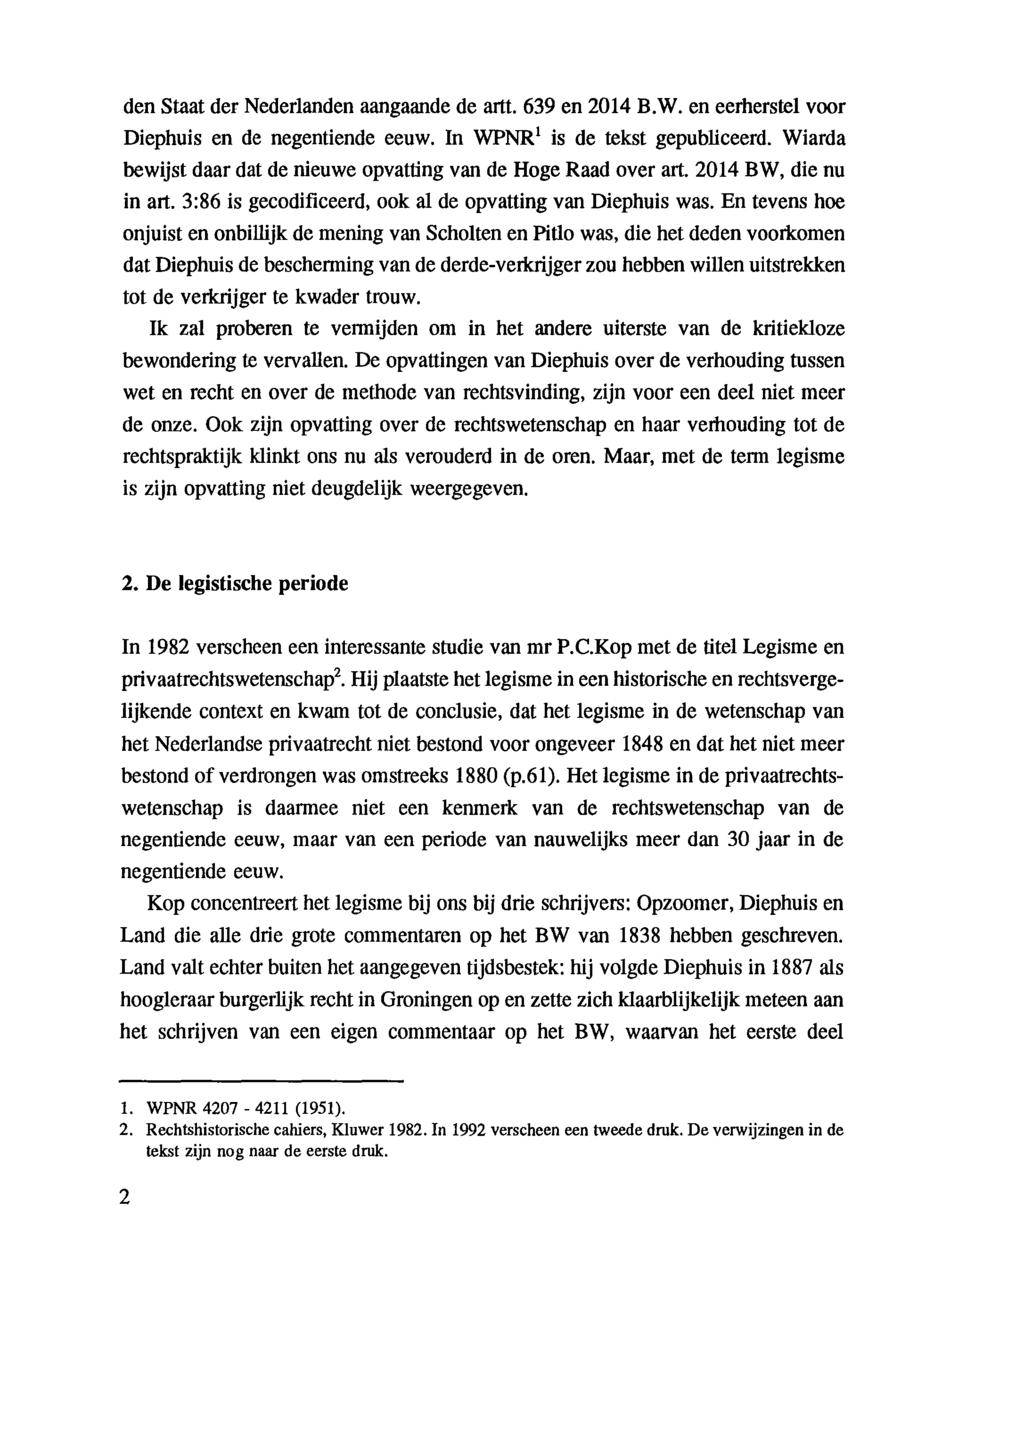 den Staat der Nederlanden aangaande de artt. 639 en 2014 B.W. en eerherstel voor Diephuis en de negentiende eeuw. In WPNR 1 is de tekst gepubliceerd.